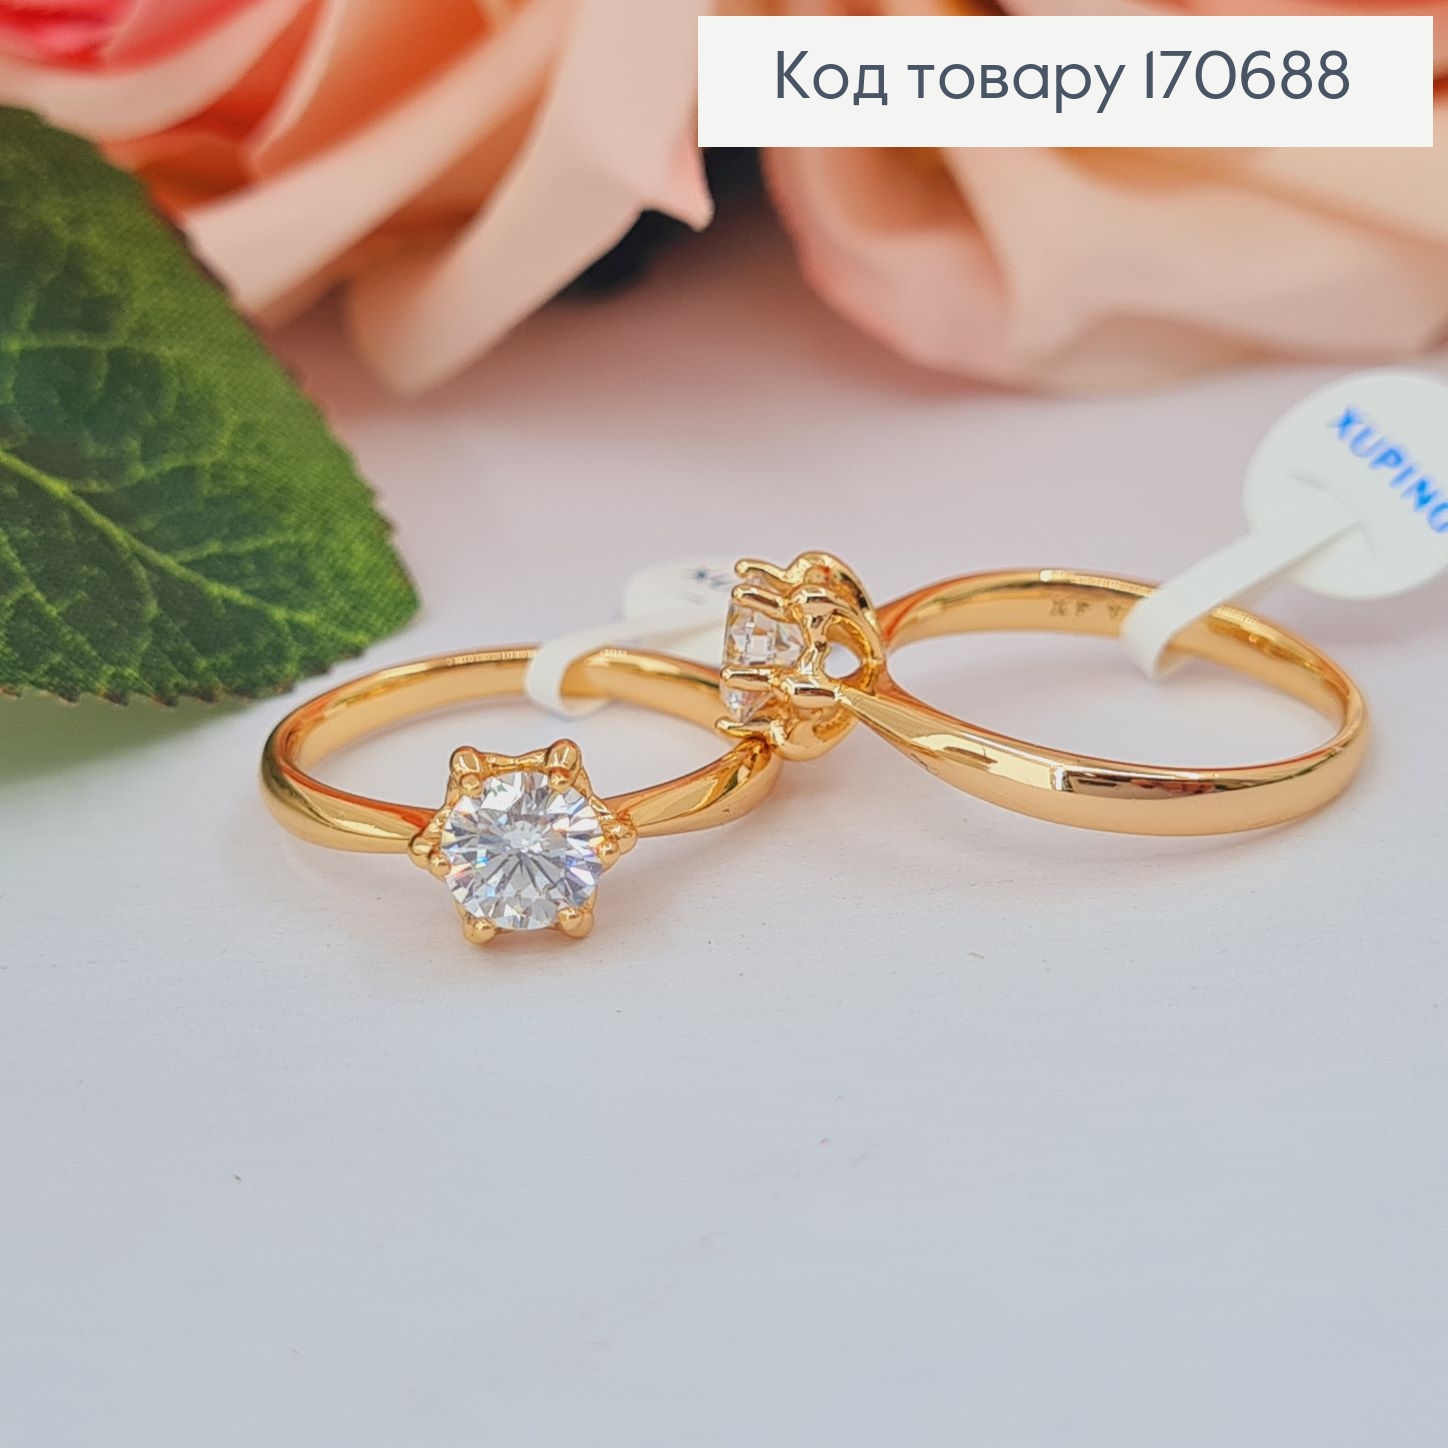 Перстень Квітка з камінцем, Xuping 18К 170688 фото 2